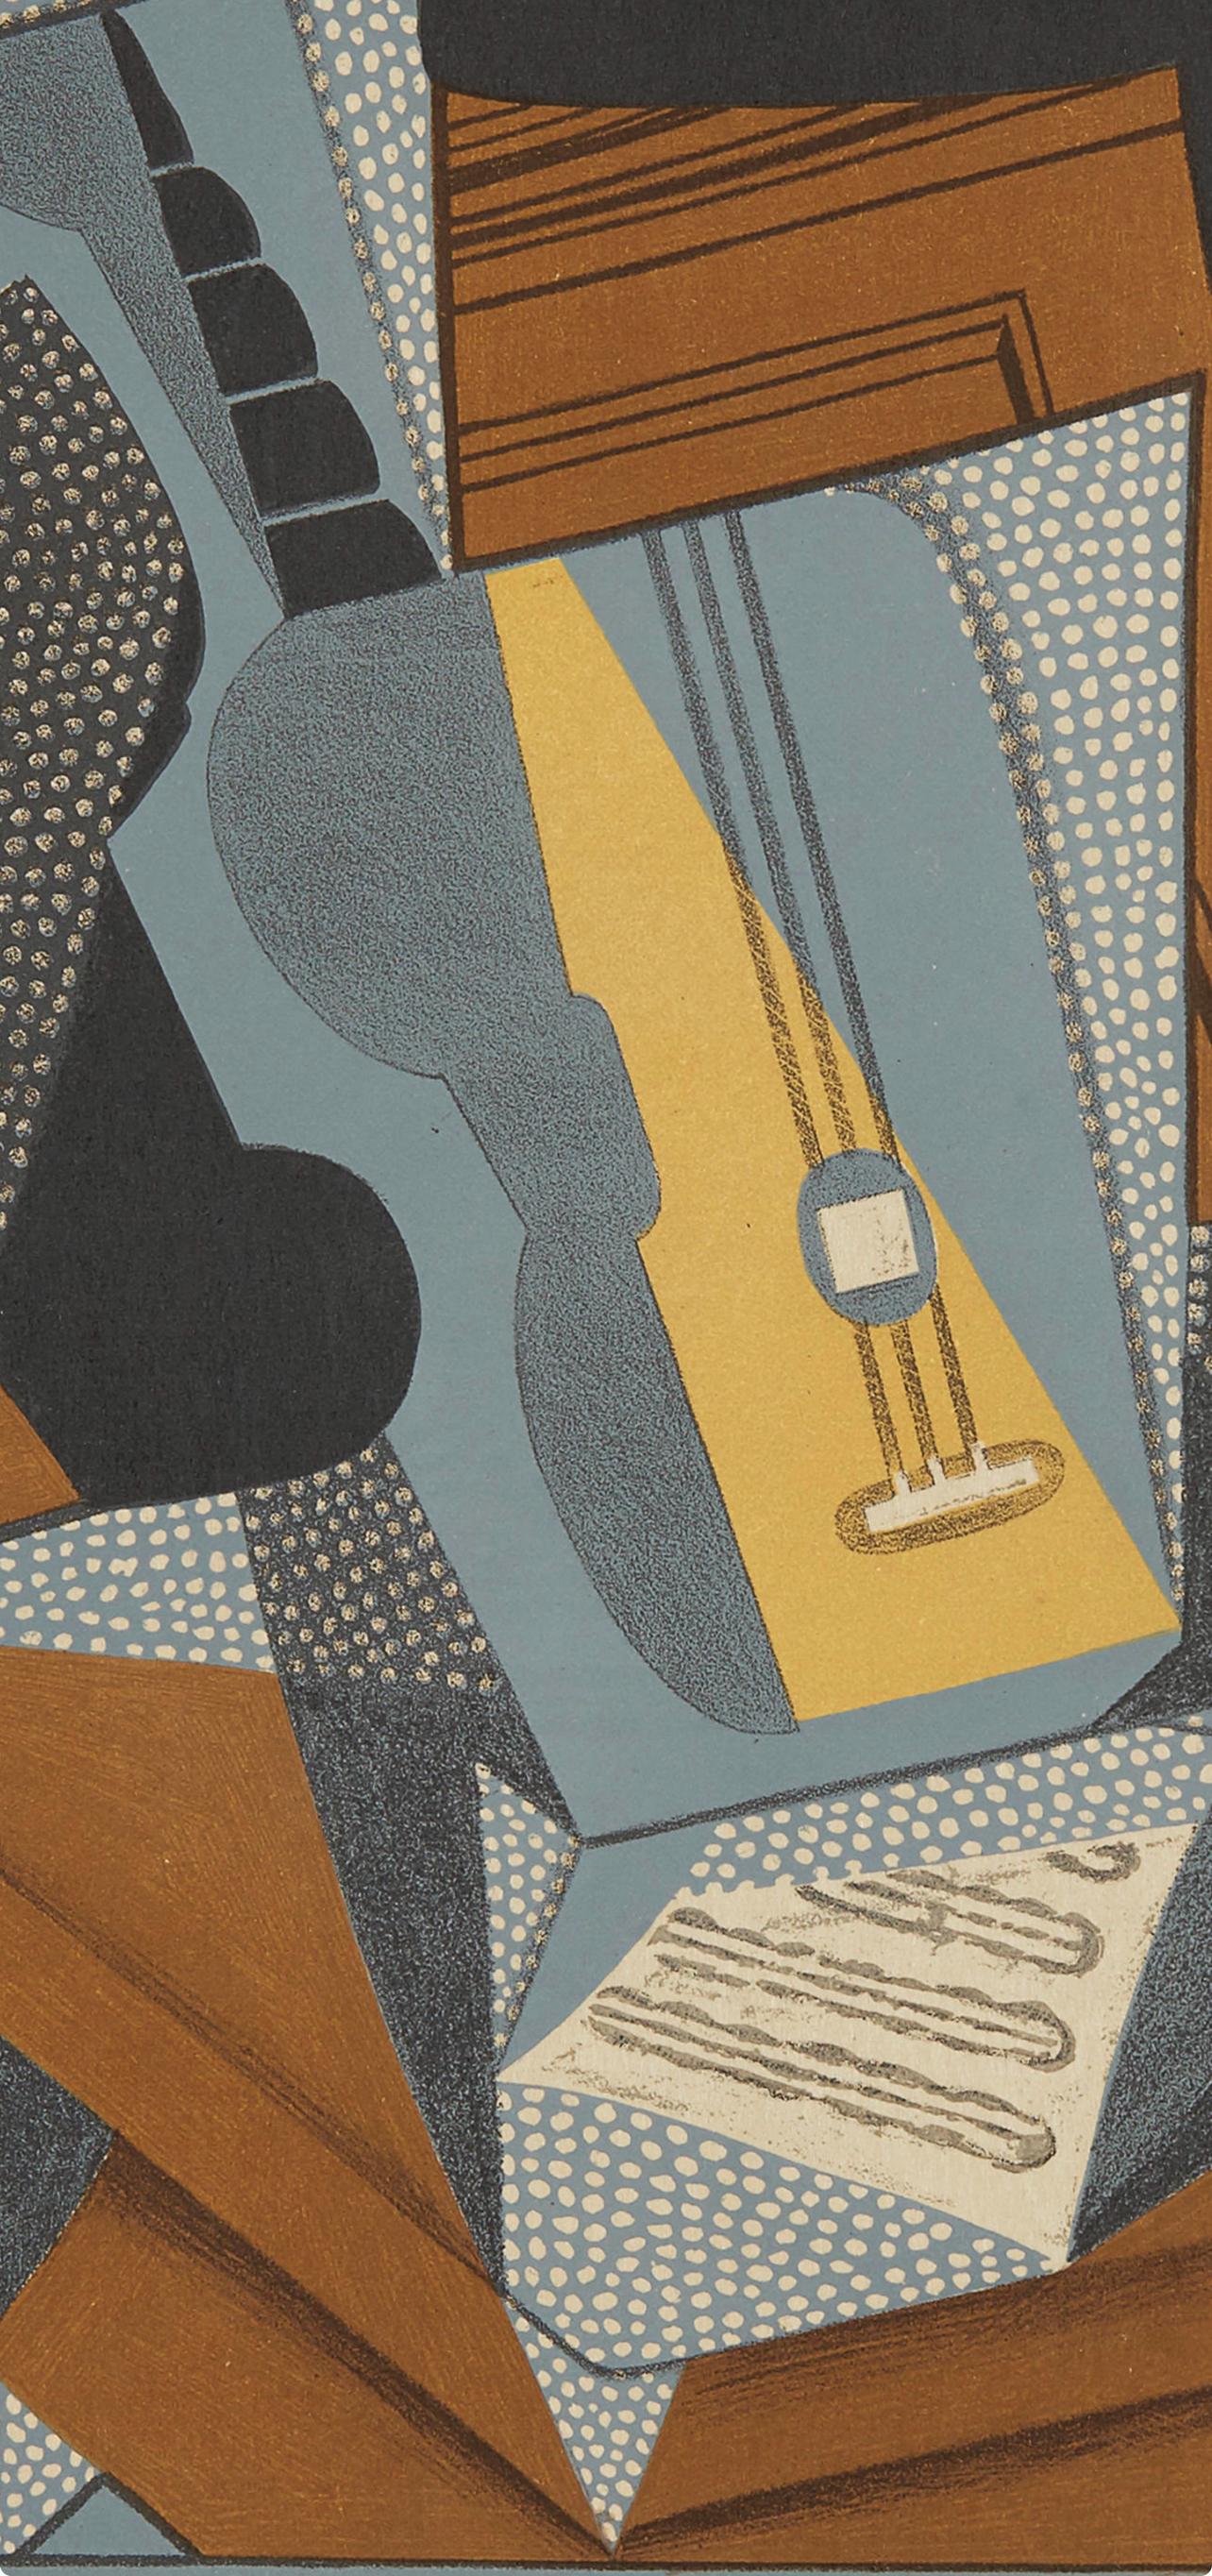 Gris, Guitare (Kahnweiler 1969), Au Soleil du Plafond (nach) (Moderne), Print, von Juan Gris